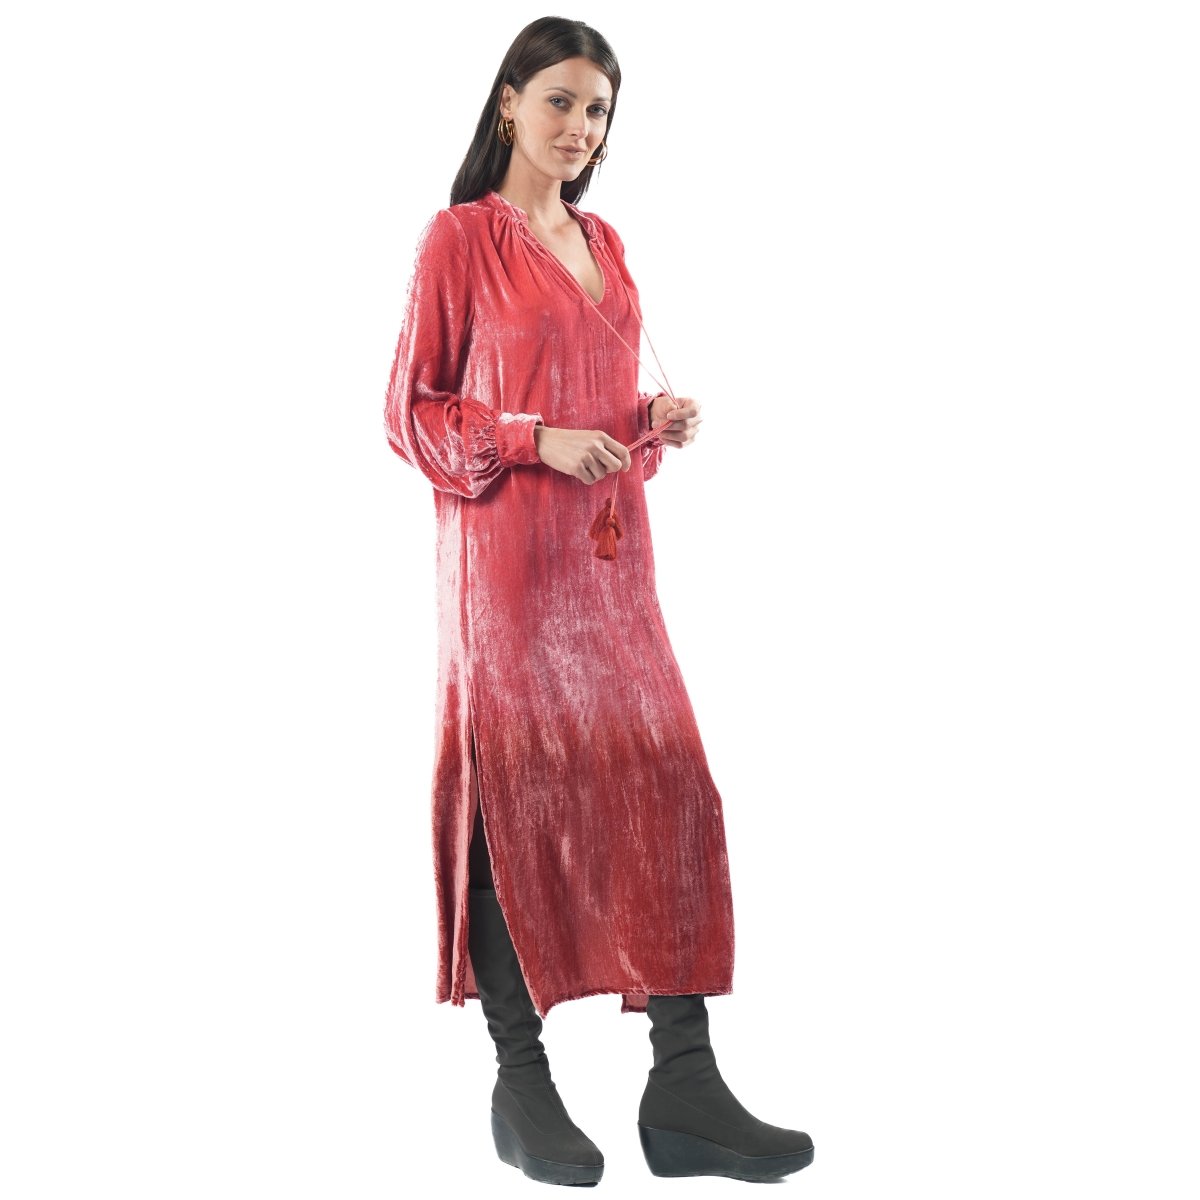 Minnie Ombre Red Dress - TANAVANA INC